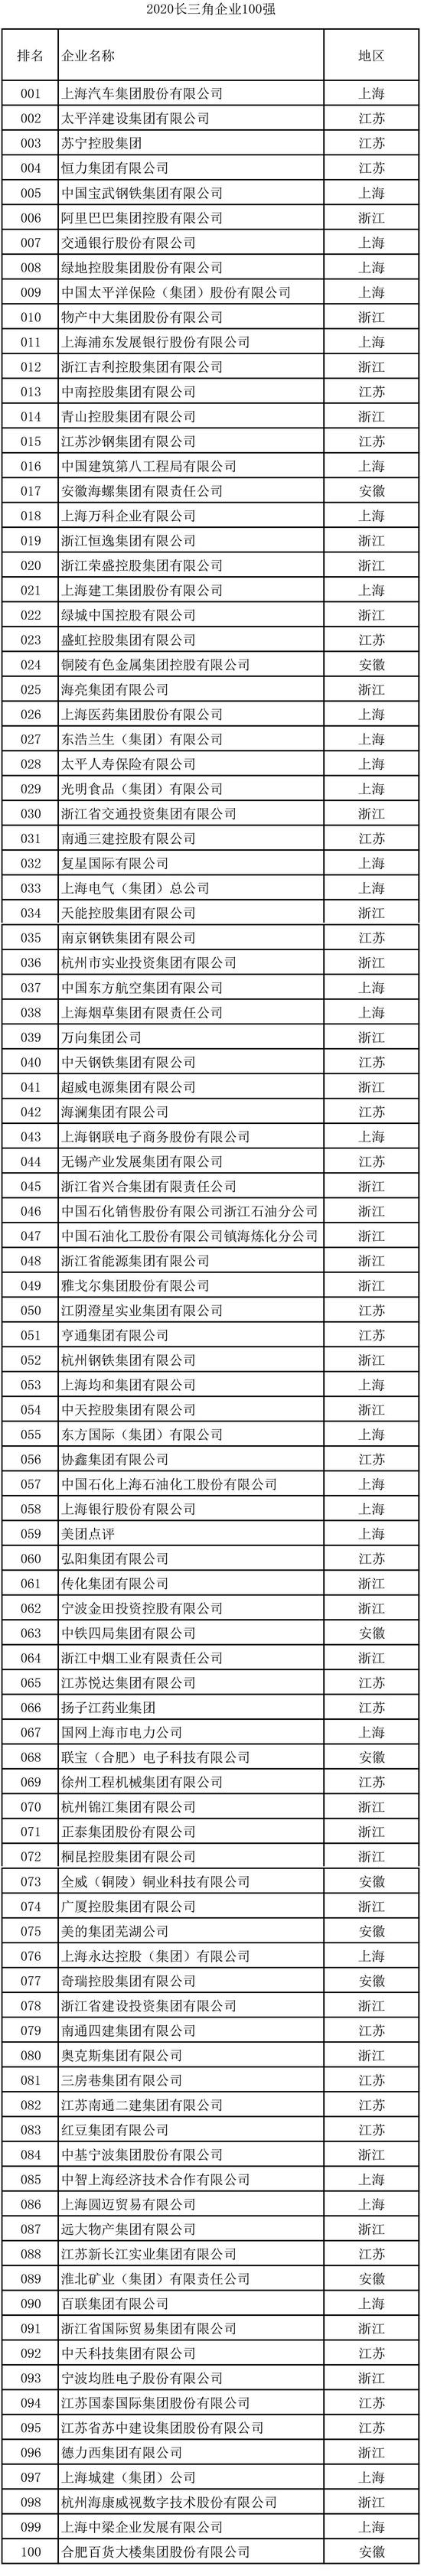 江苏企业排名2020_2020年南京市百强企业榜单发布!